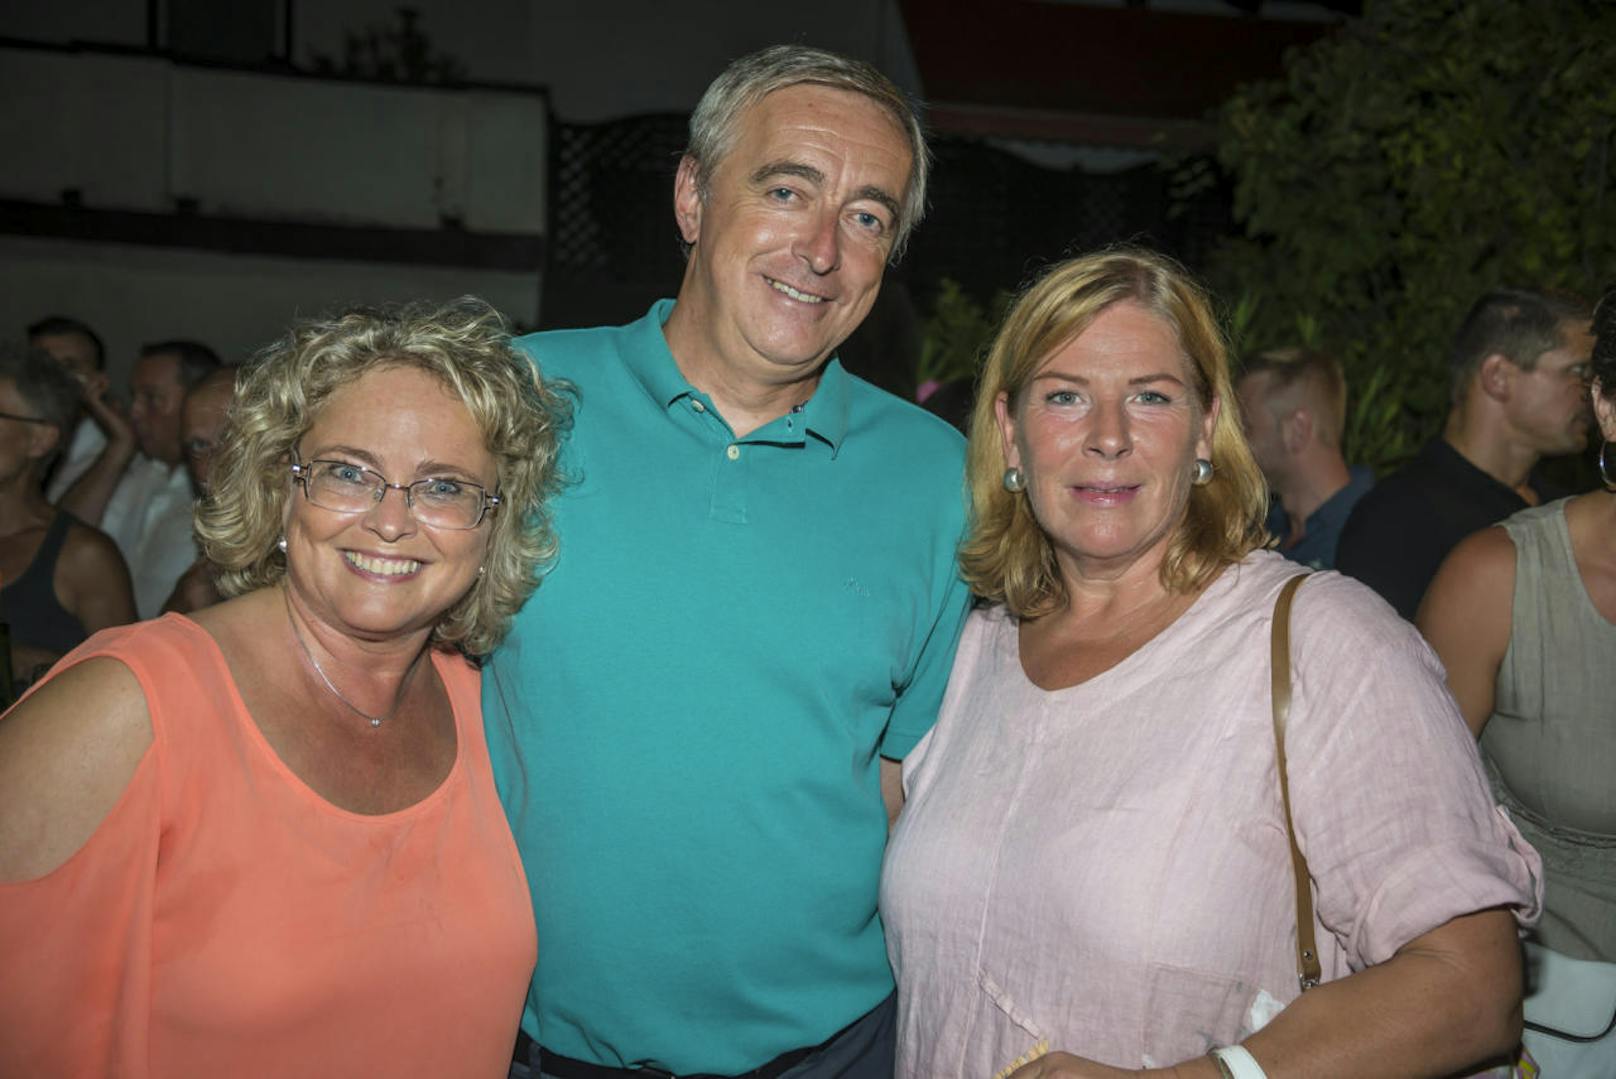 Claudia-Bandion-Ortner mit Ihrem Ales Cala sowie die
Ex-Ministerkollegin Andrea Kdolsky